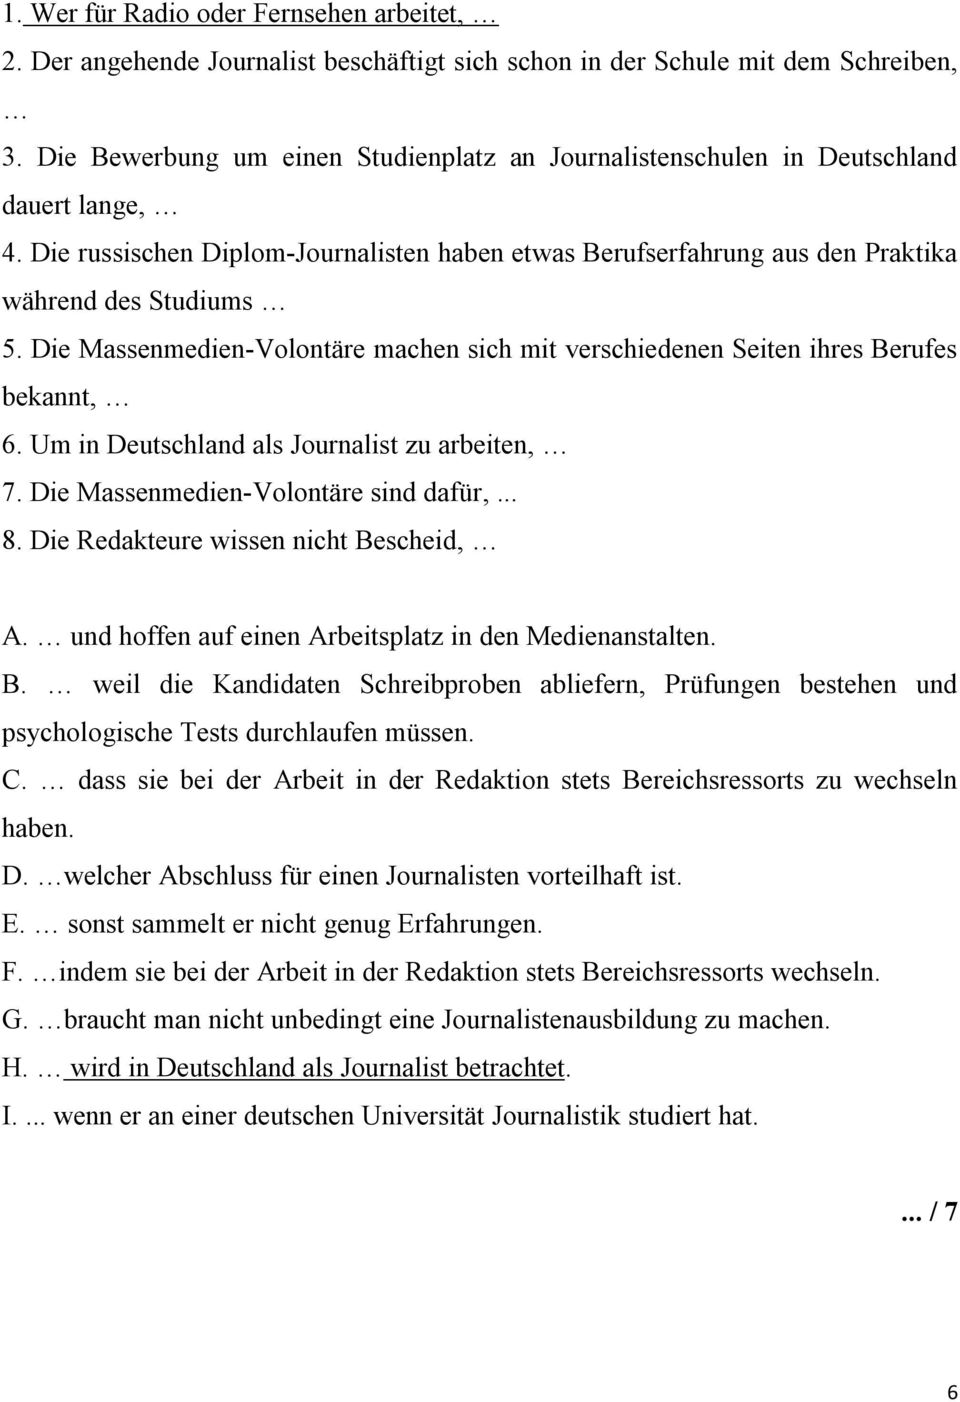 Die Massenmedien-Volontäre machen sich mit verschiedenen Seiten ihres Berufes bekannt, 6. Um in Deutschland als Journalist zu arbeiten, 7. Die Massenmedien-Volontäre sind dafür,... 8.